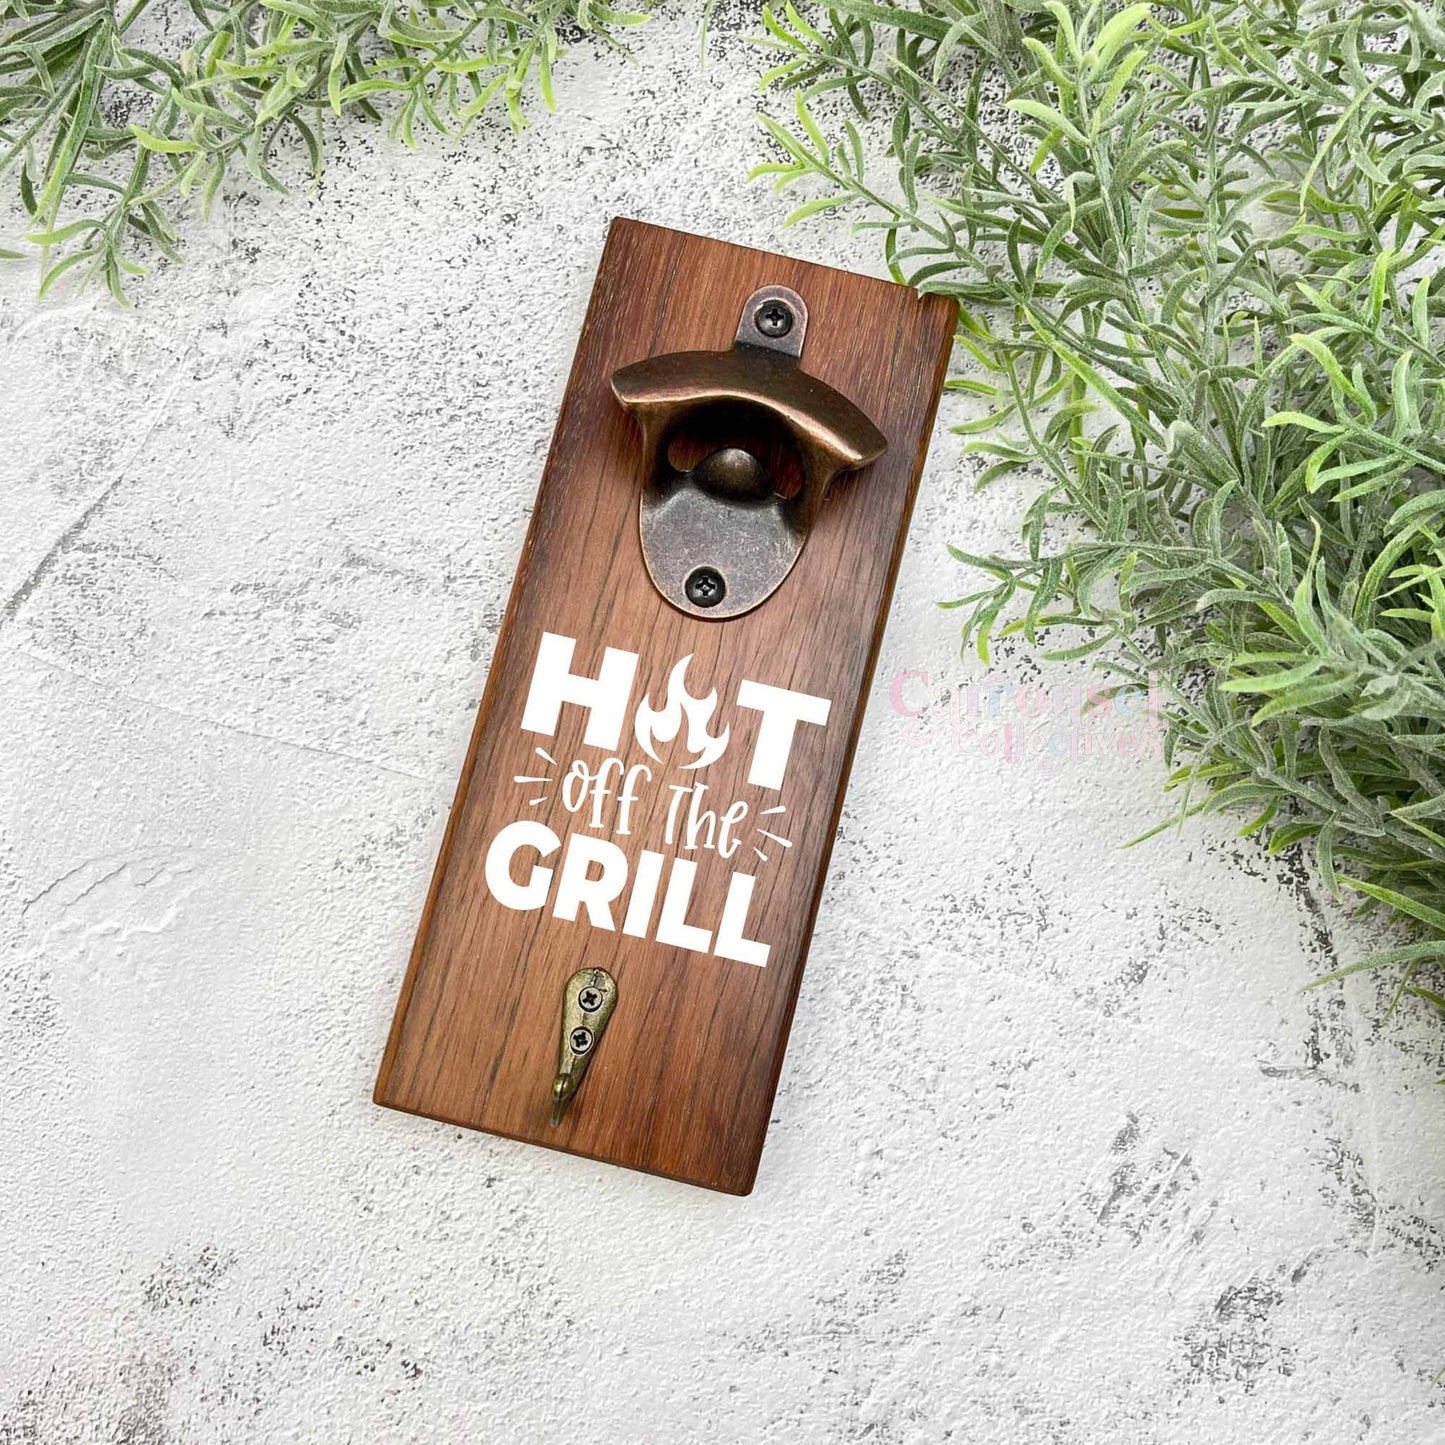 Hot off the grill bottle opener sign, Australian ironbark hardwood sign